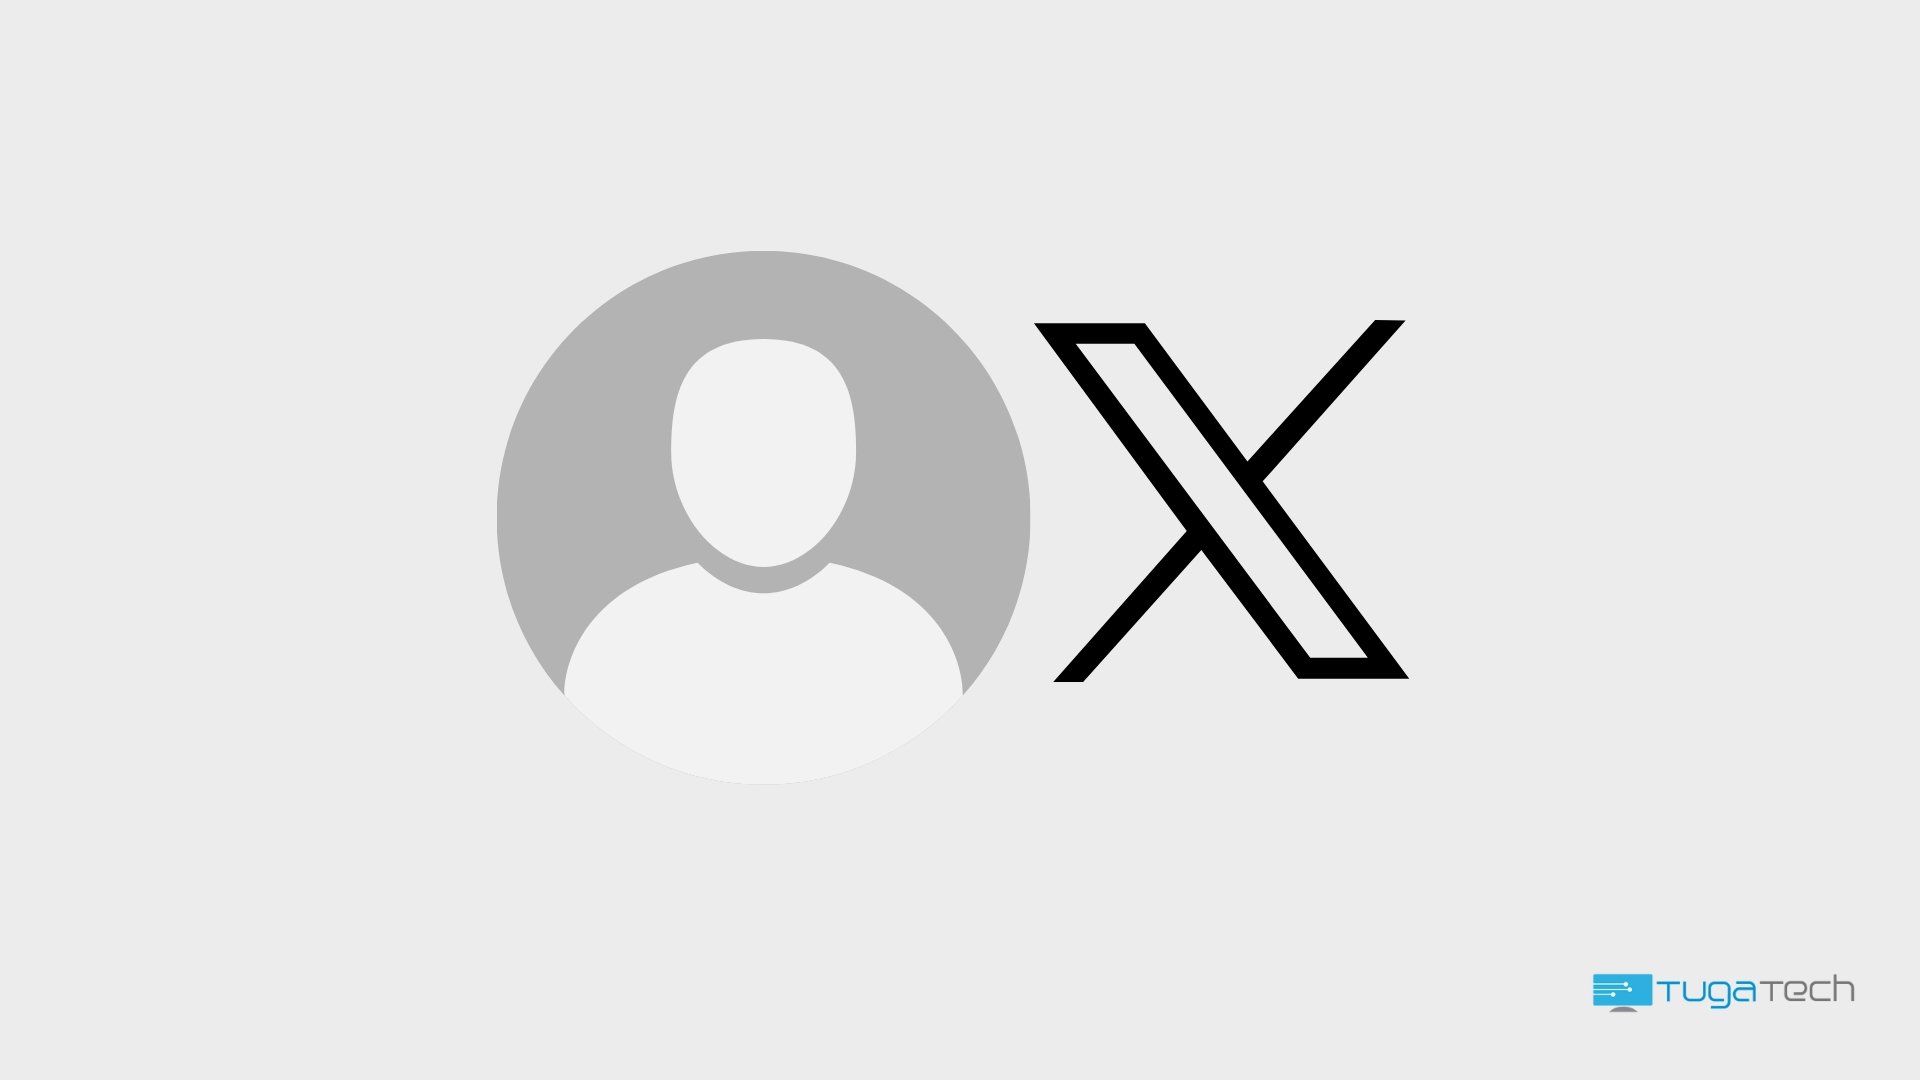 Icone de um utilizador com o logo da X